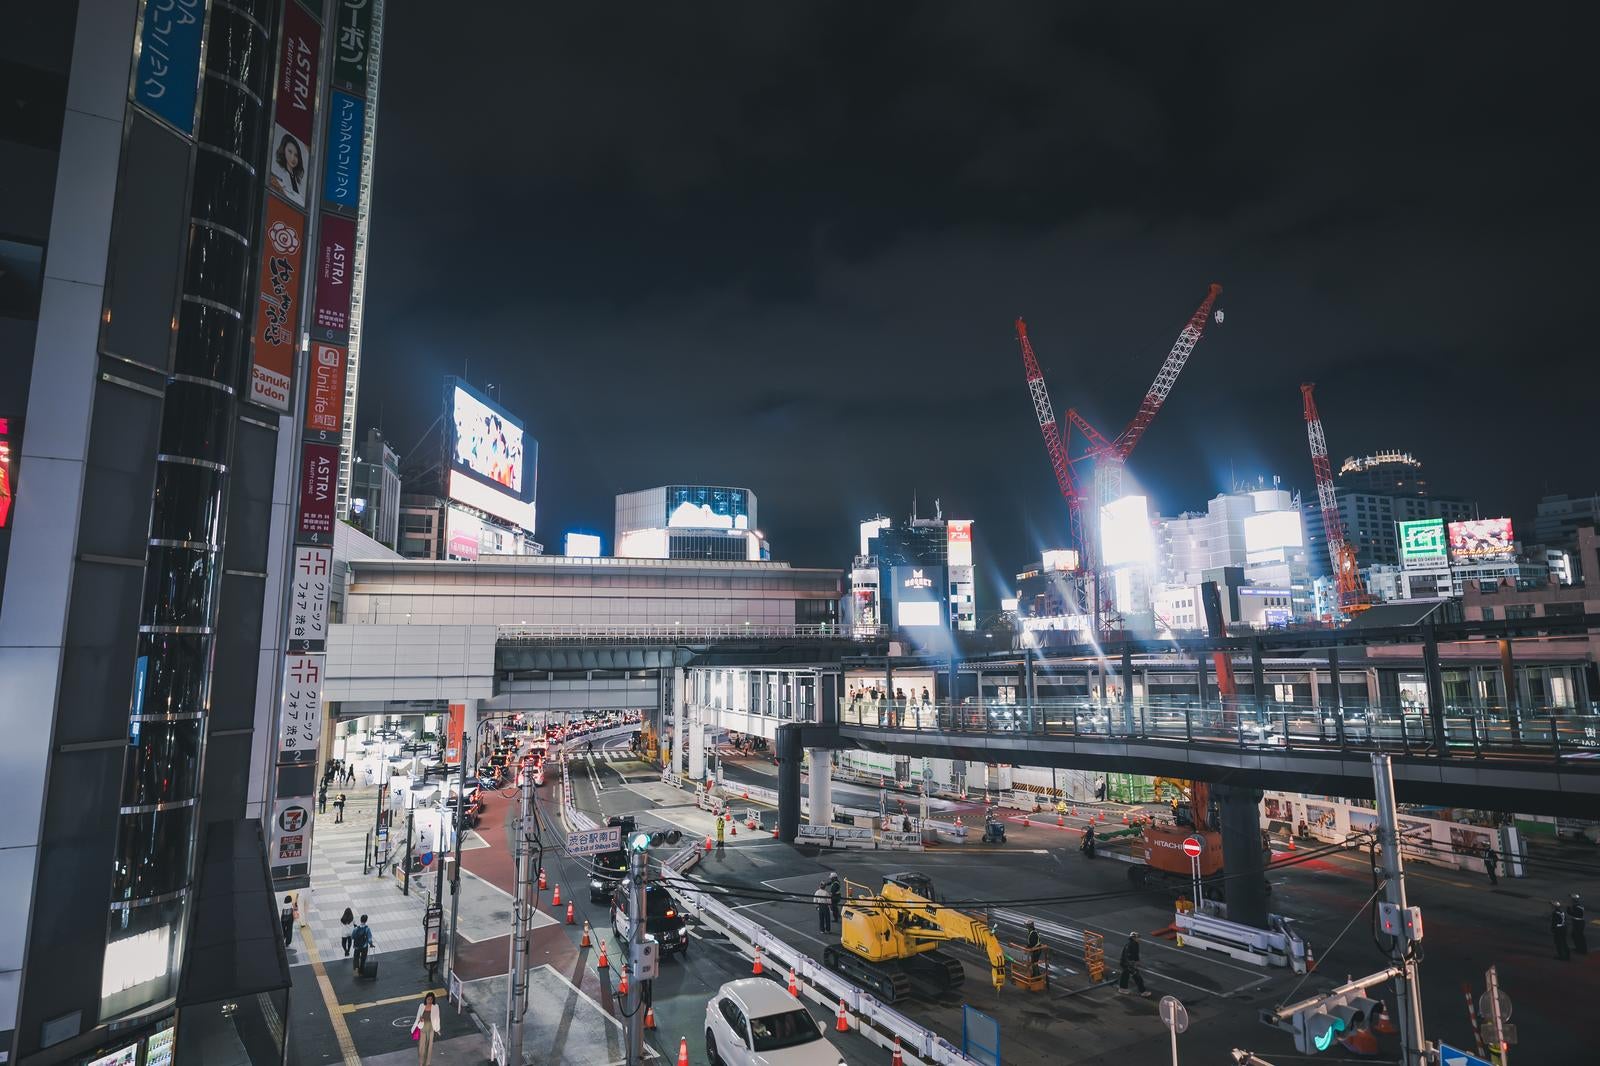 「渋谷駅南口の工事現場と輝くネオン」の写真